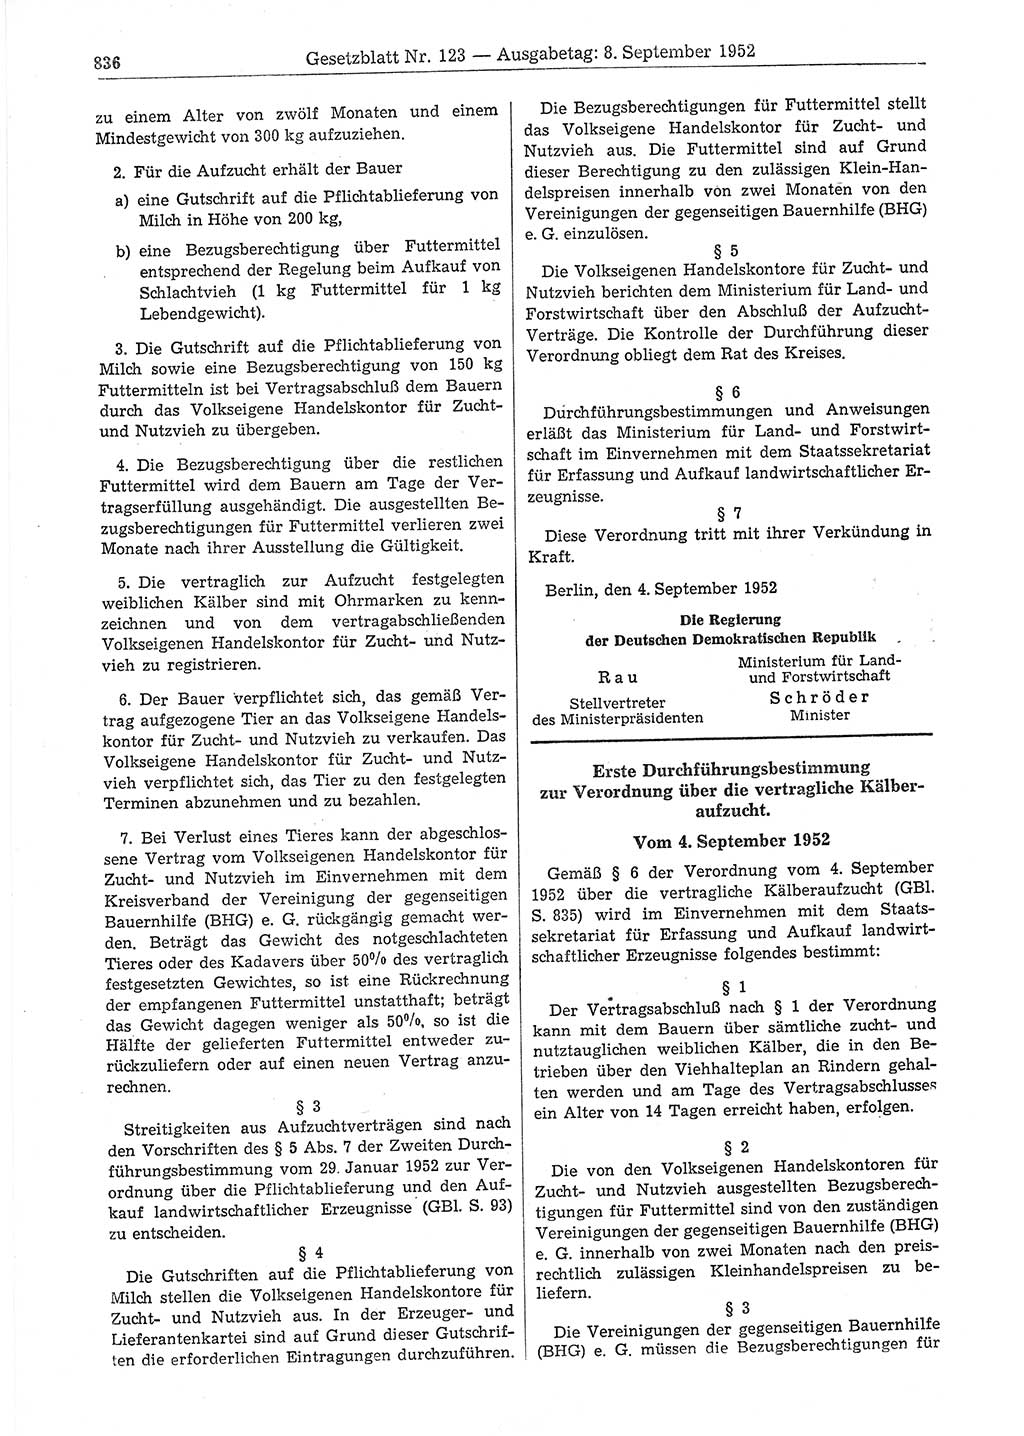 Gesetzblatt (GBl.) der Deutschen Demokratischen Republik (DDR) 1952, Seite 836 (GBl. DDR 1952, S. 836)